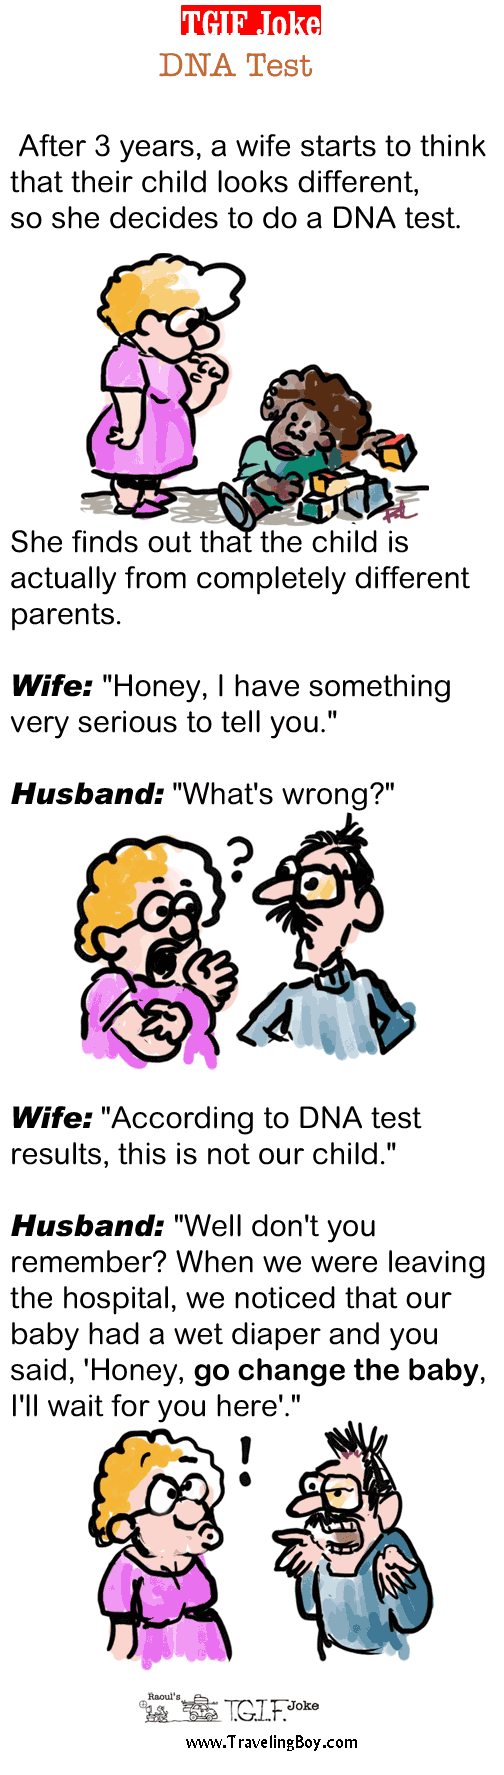 TGIF Joke of the Week: DNA Test